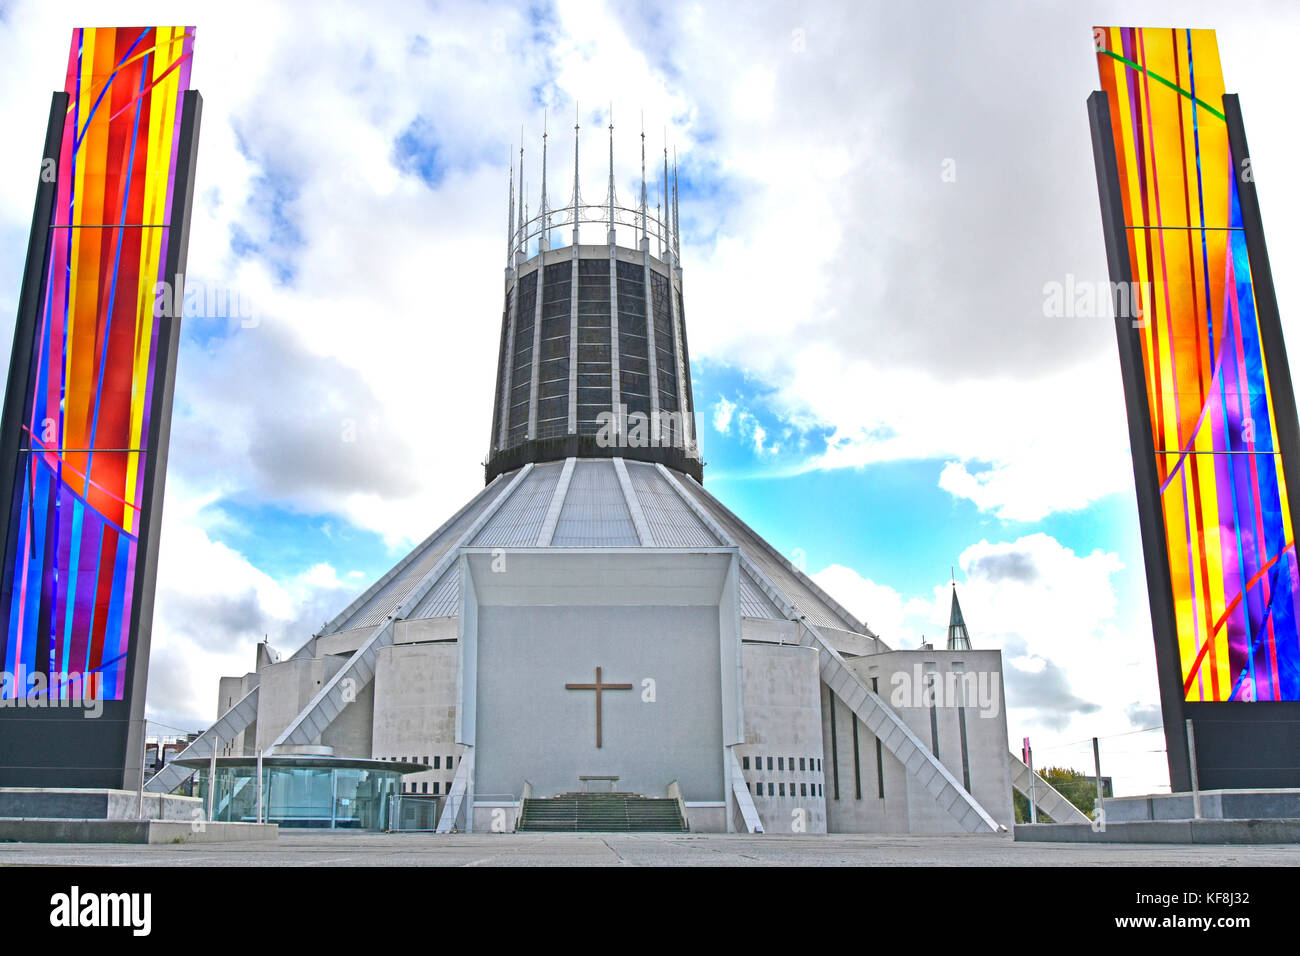 Cathédrale métropolitaine de Liverpool architecture moderne et design de l'extérieur de l'église catholique flanqué de vitraux Merseyside Angleterre Royaume-Uni Banque D'Images